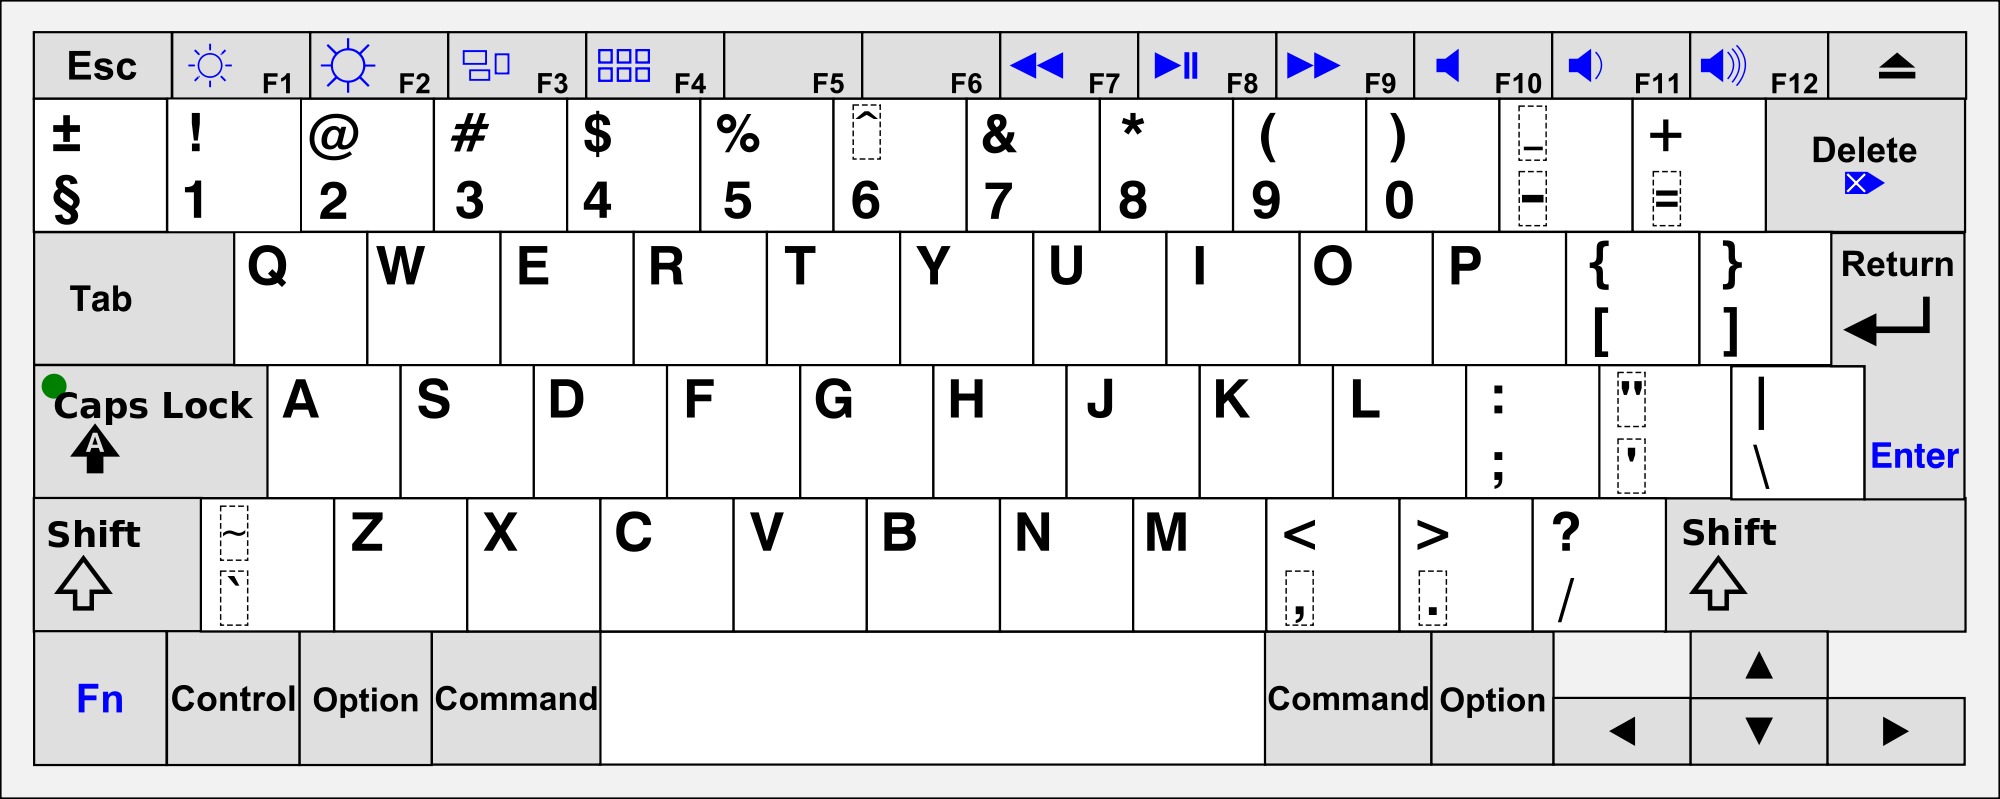 Qwerty keyboard layout